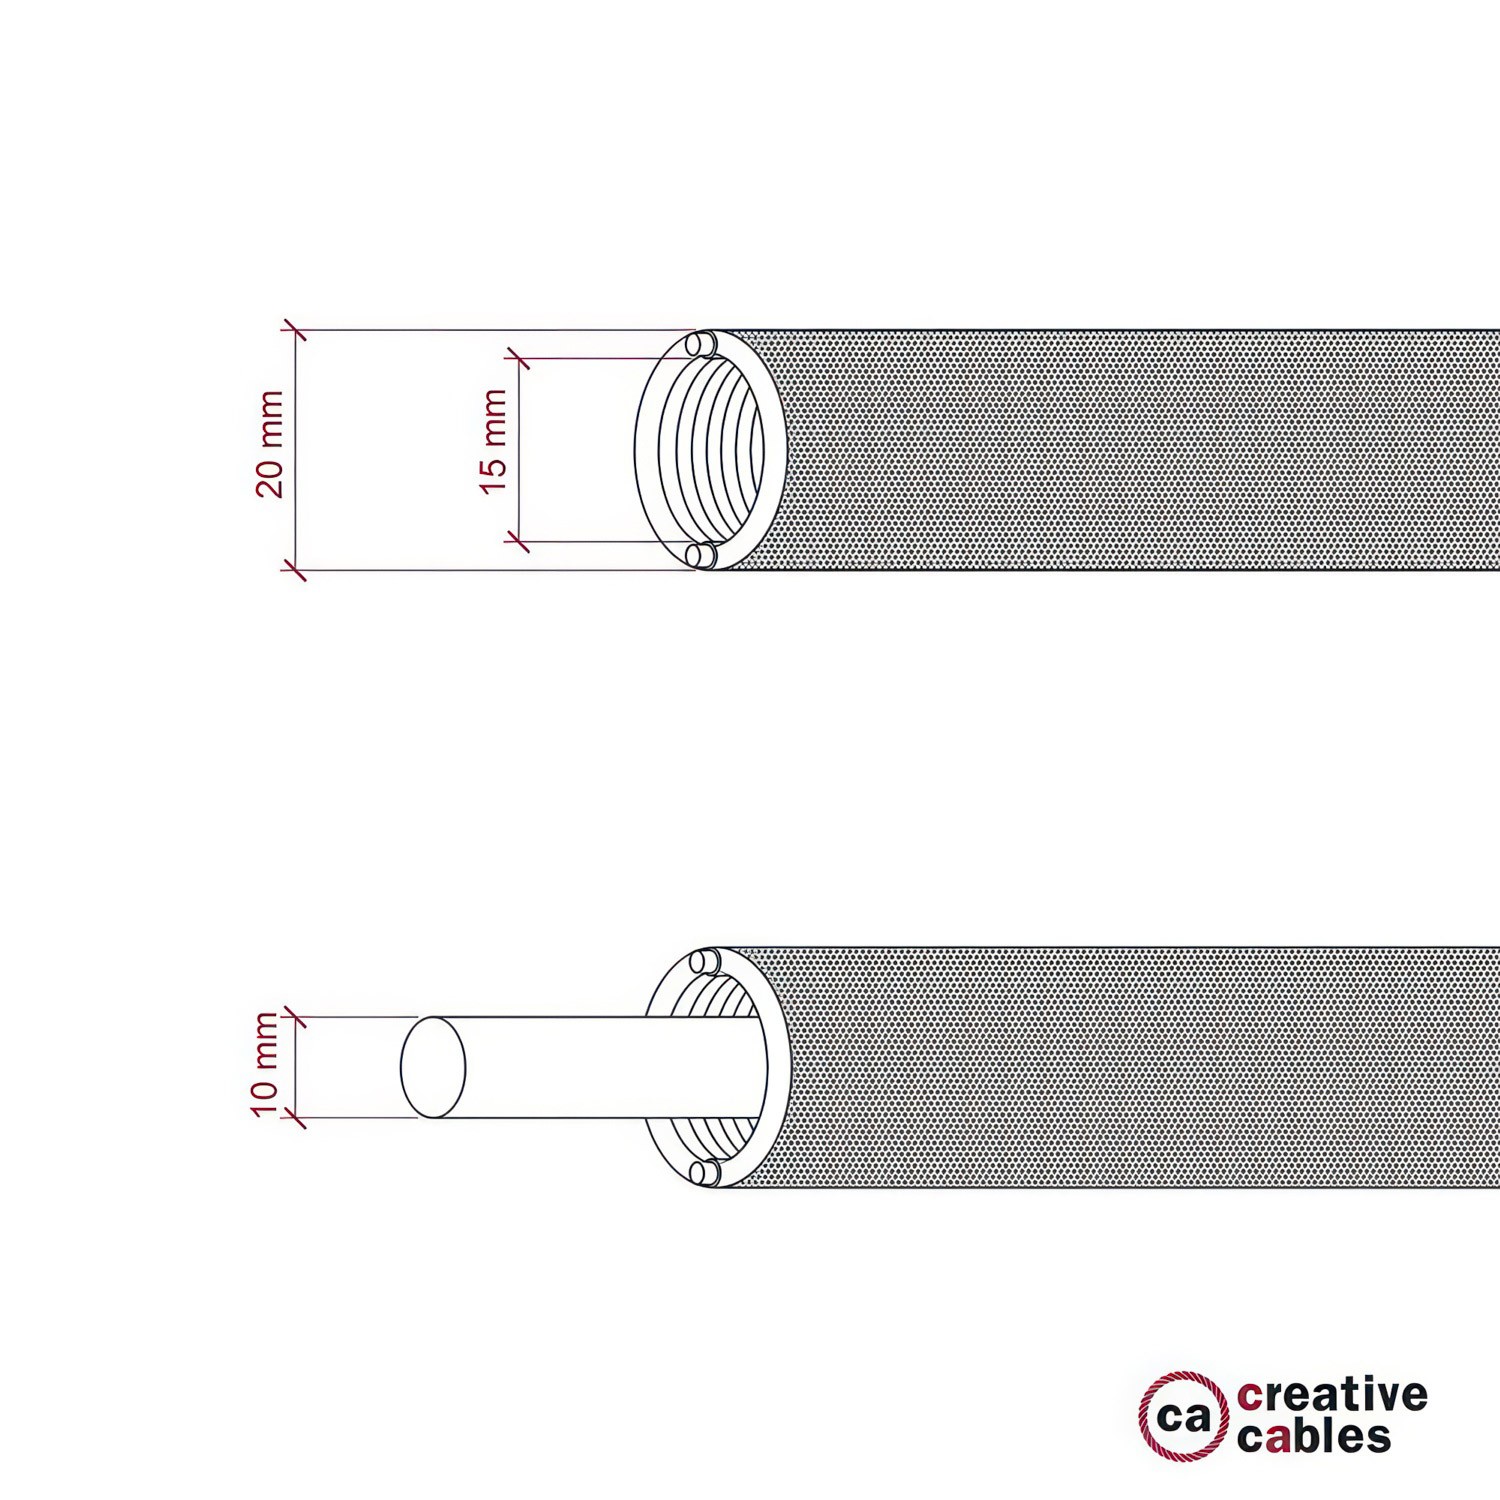 Tubo Flexivel Creative-Tube, coberto por tecido seda artificial Vermelho RM09, diametro 20 mm